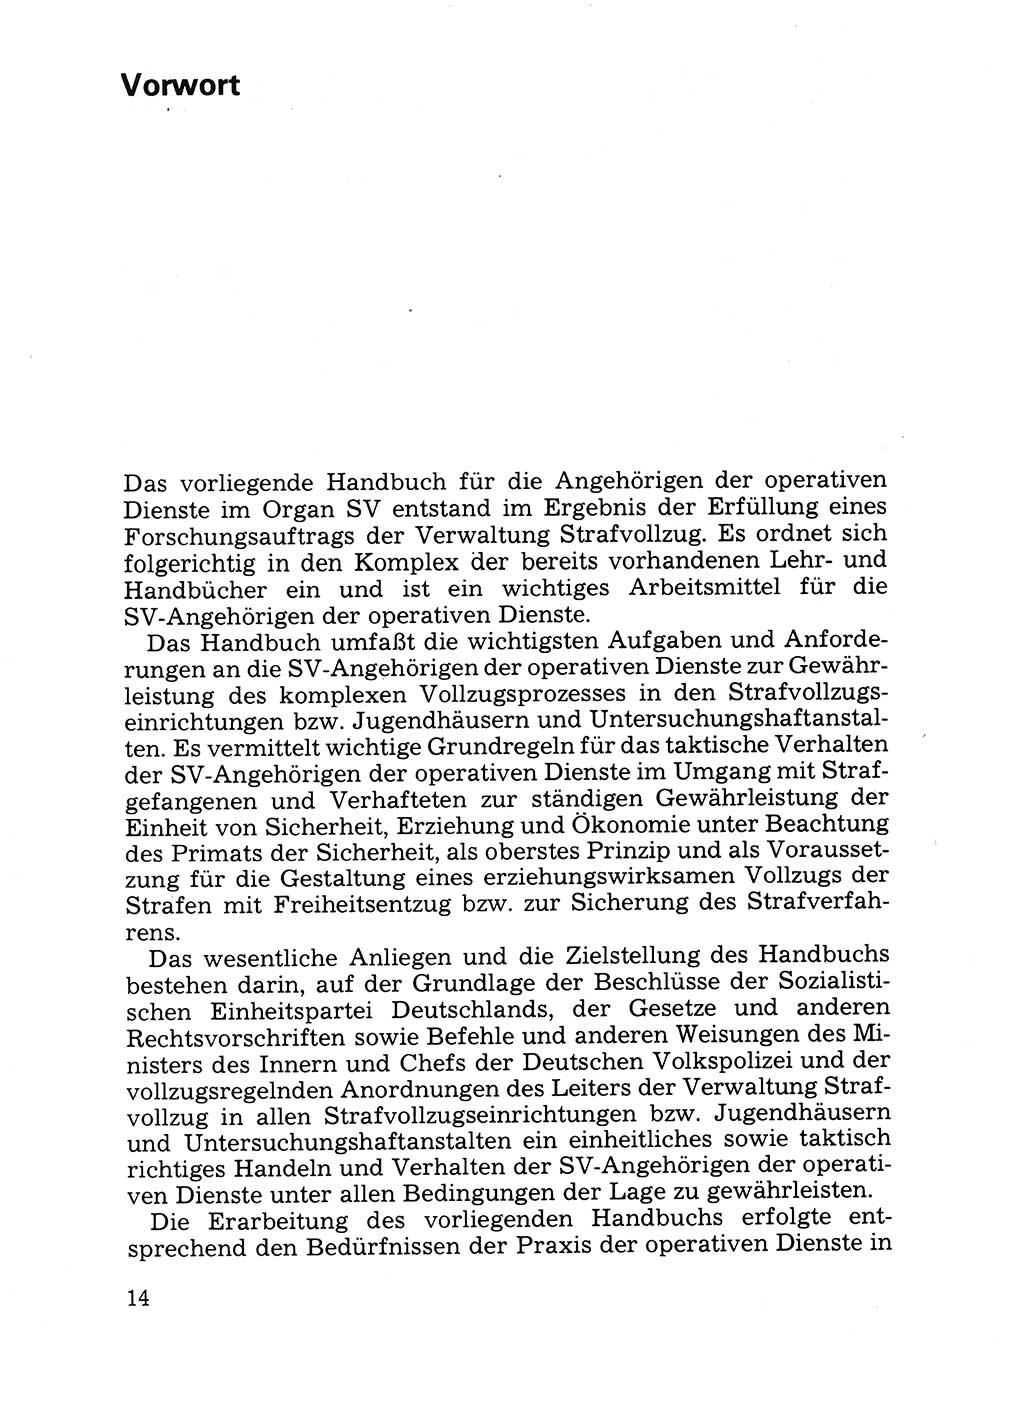 Handbuch für operative Dienste, Abteilung Strafvollzug (SV) [Ministerium des Innern (MdI) Deutsche Demokratische Republik (DDR)] 1981, Seite 14 (Hb. op. D. Abt. SV MdI DDR 1981, S. 14)